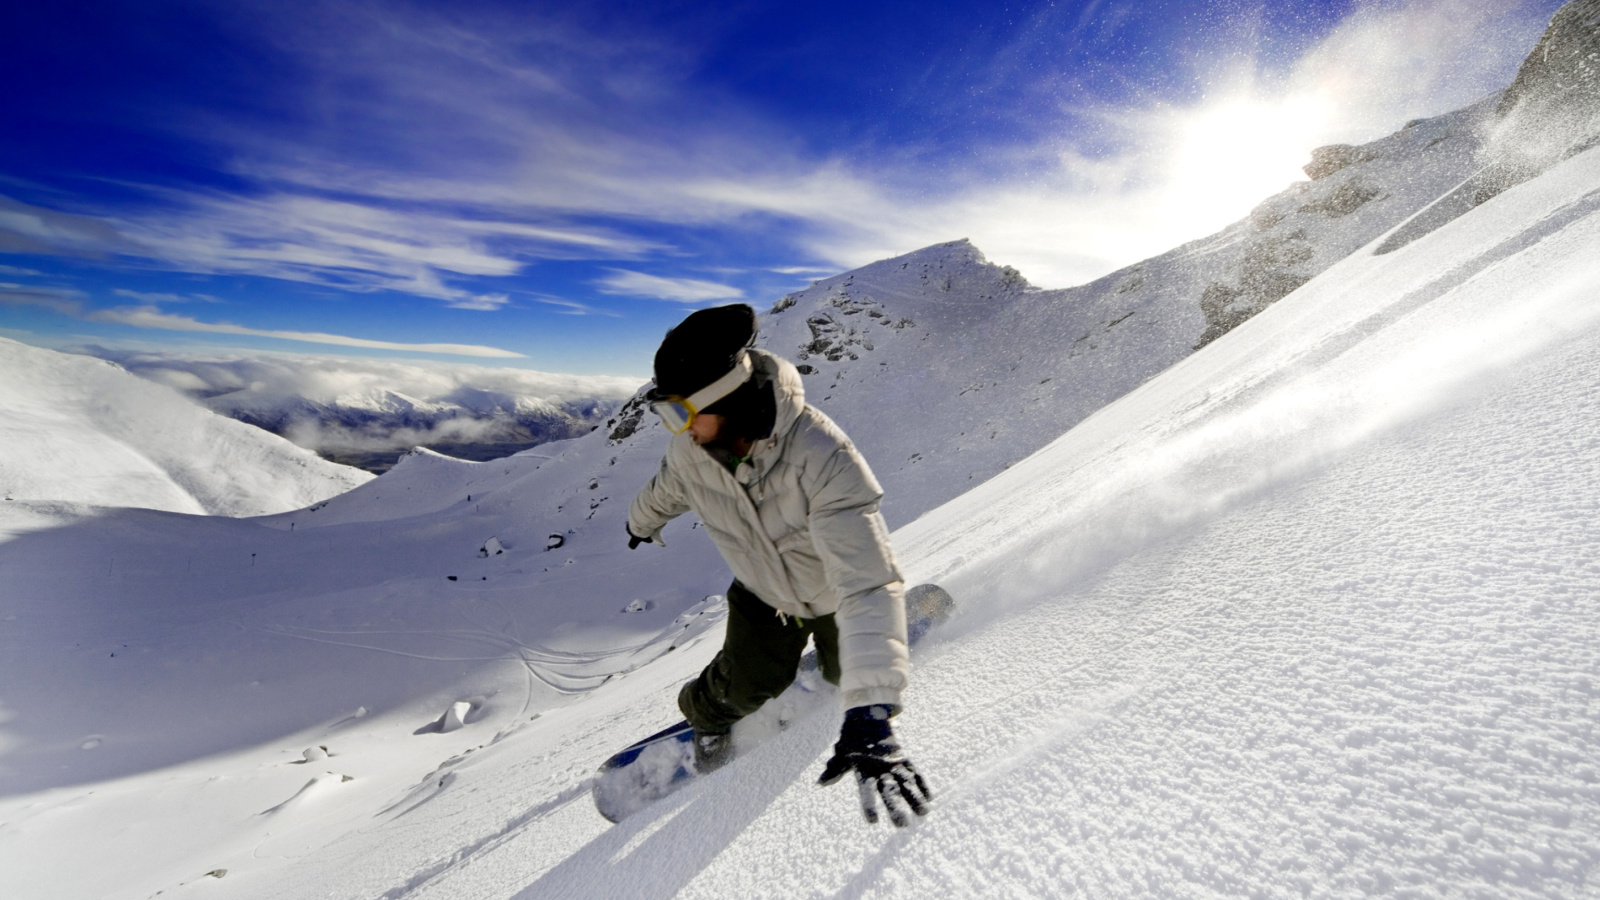 Outdoor activities as Snowboarding screenshot #1 1600x900